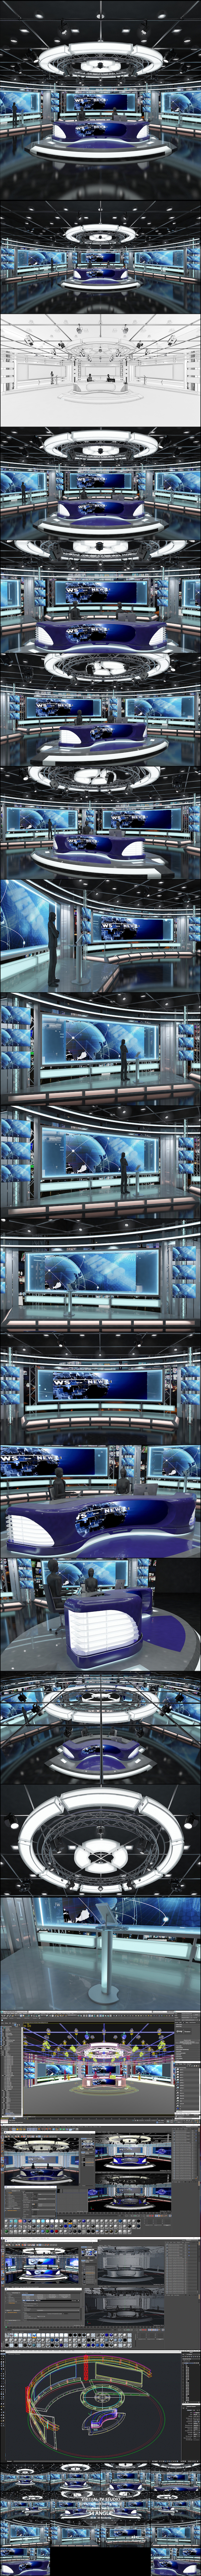 Virtual TV Studio - 3Docean 21557295